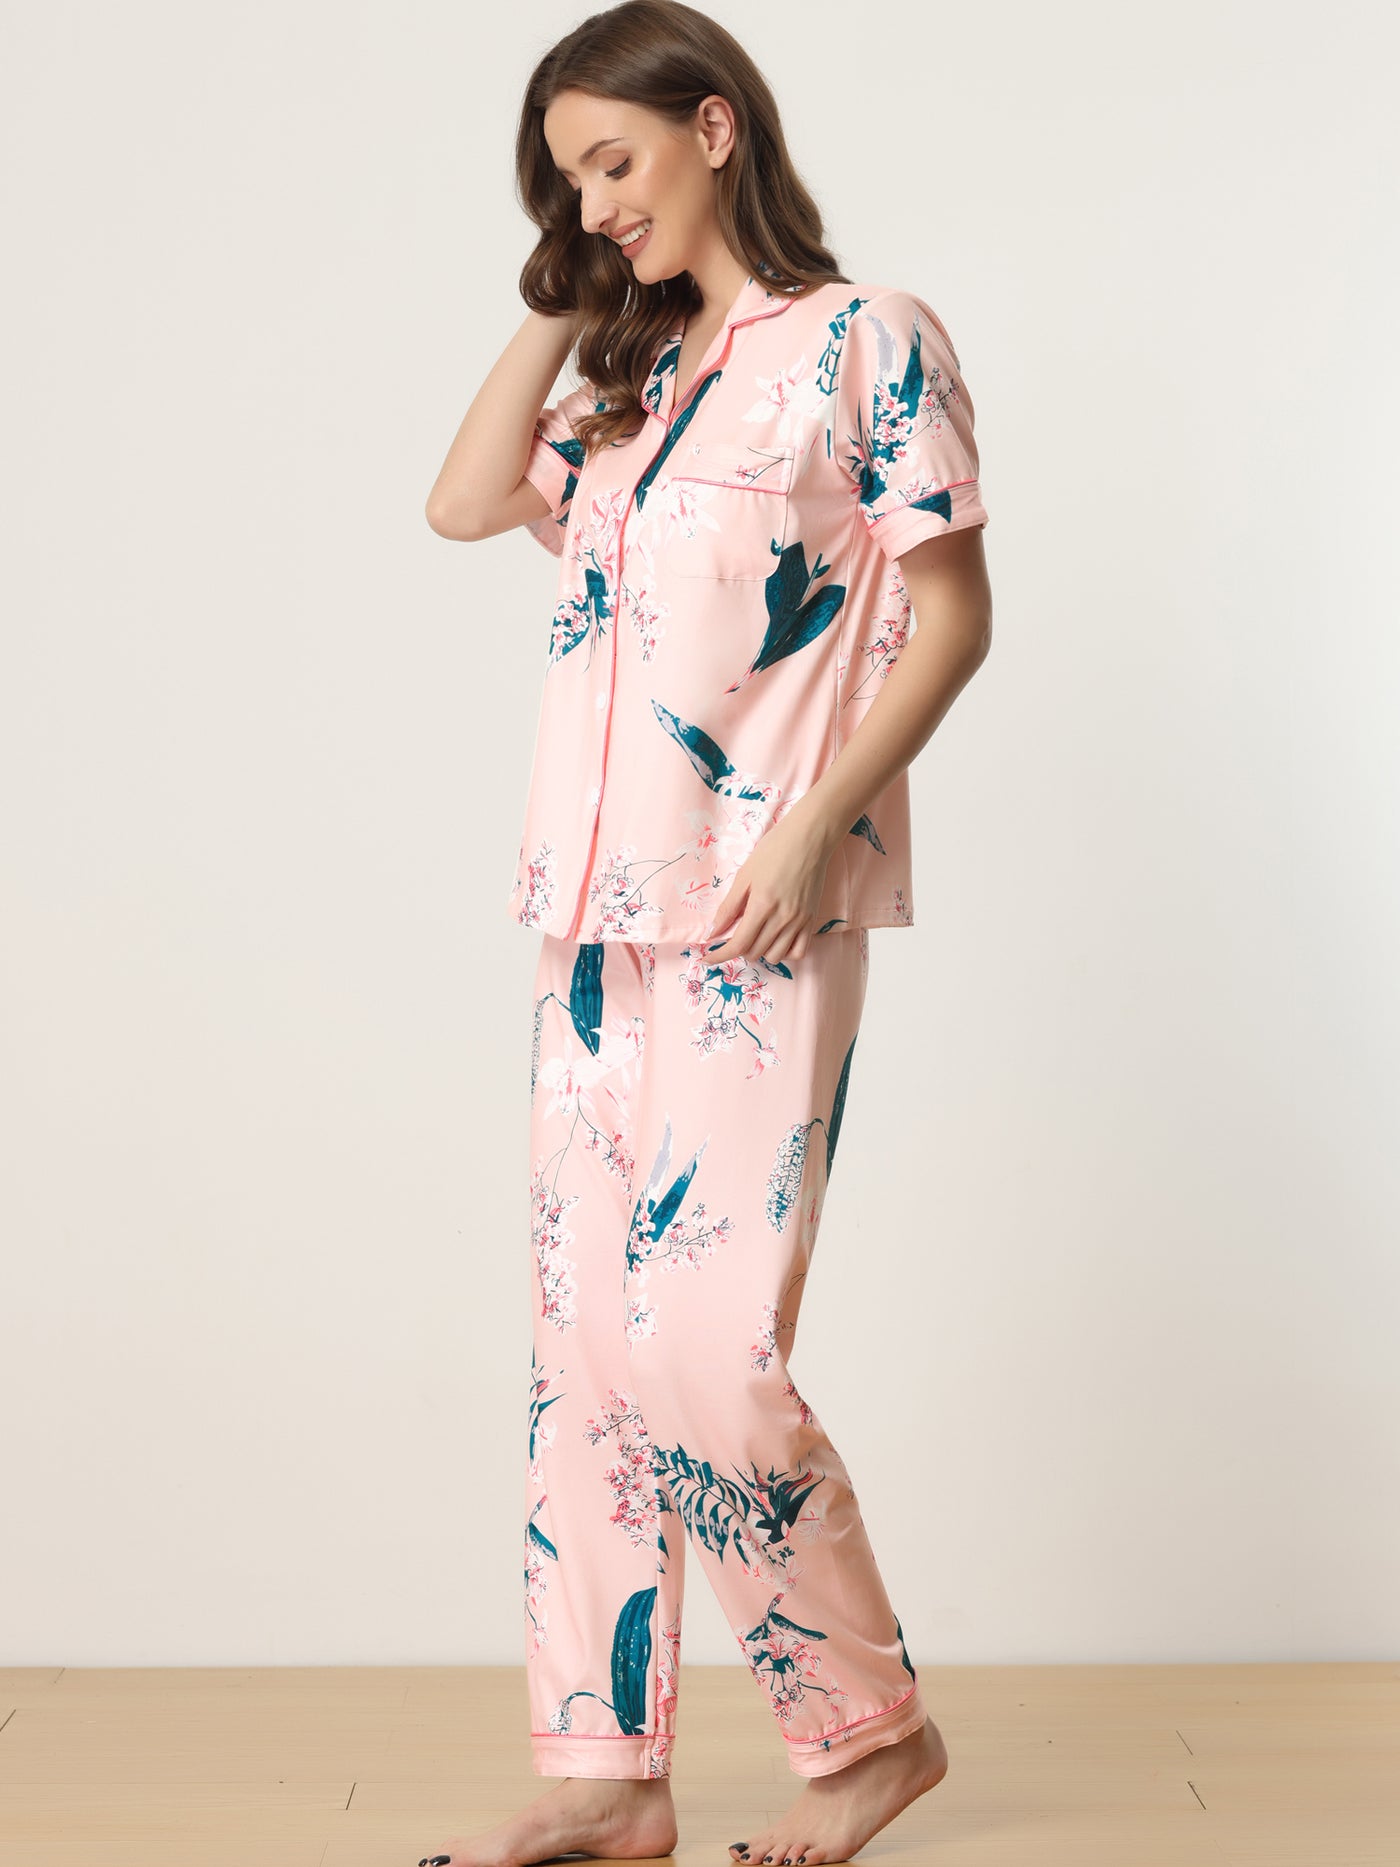 Bublédon Women's 2pcs Floral Button Down Pajama Set Nightwear Sleepwear